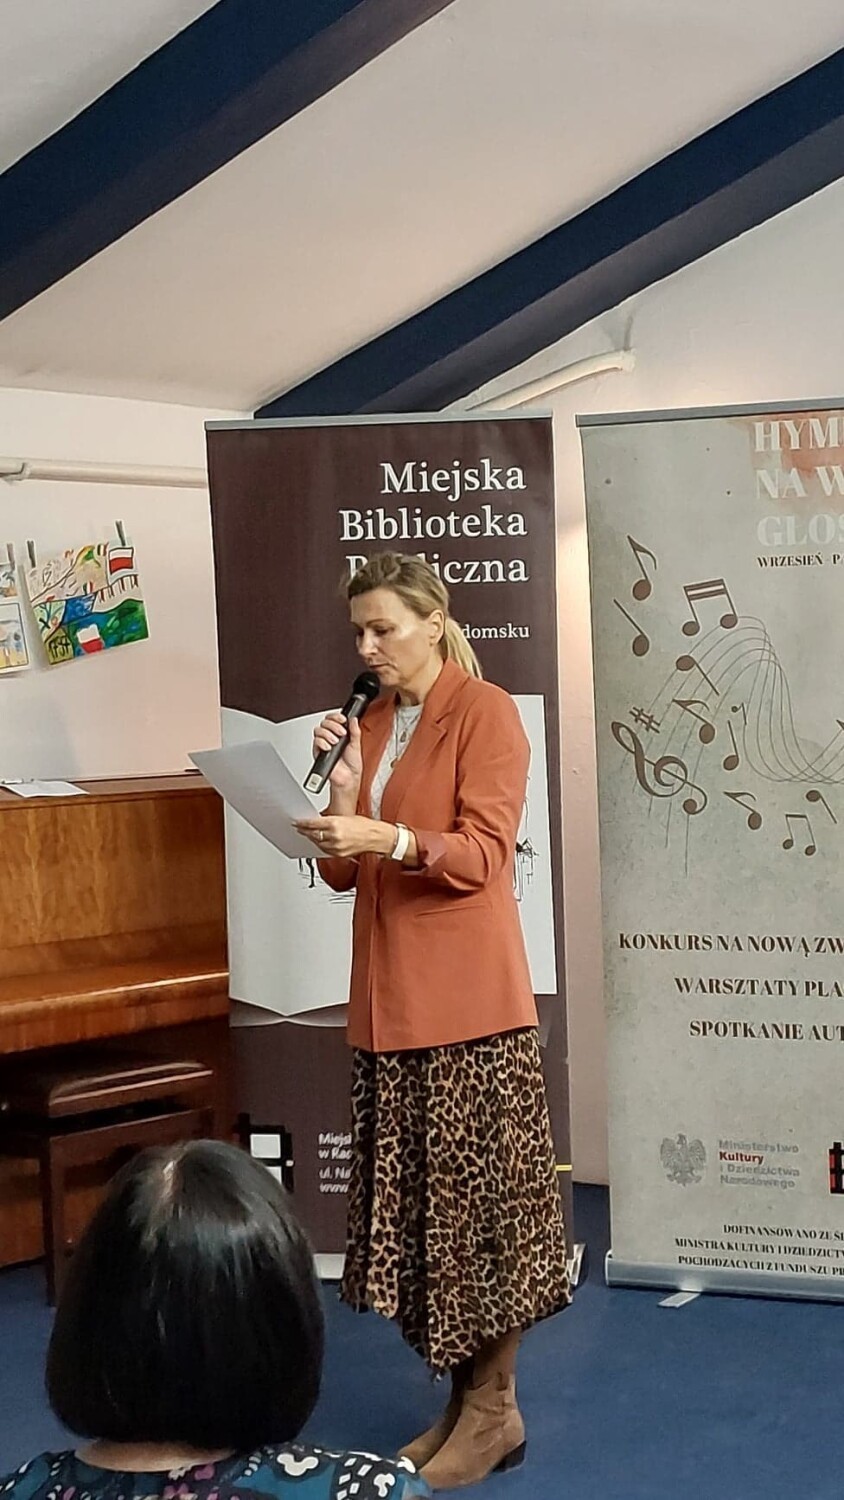 Konkurs "Na nową zwrotkę hymnu" rozstrzygnięty w Bibliotece w Radomsku. ZDJĘCIA